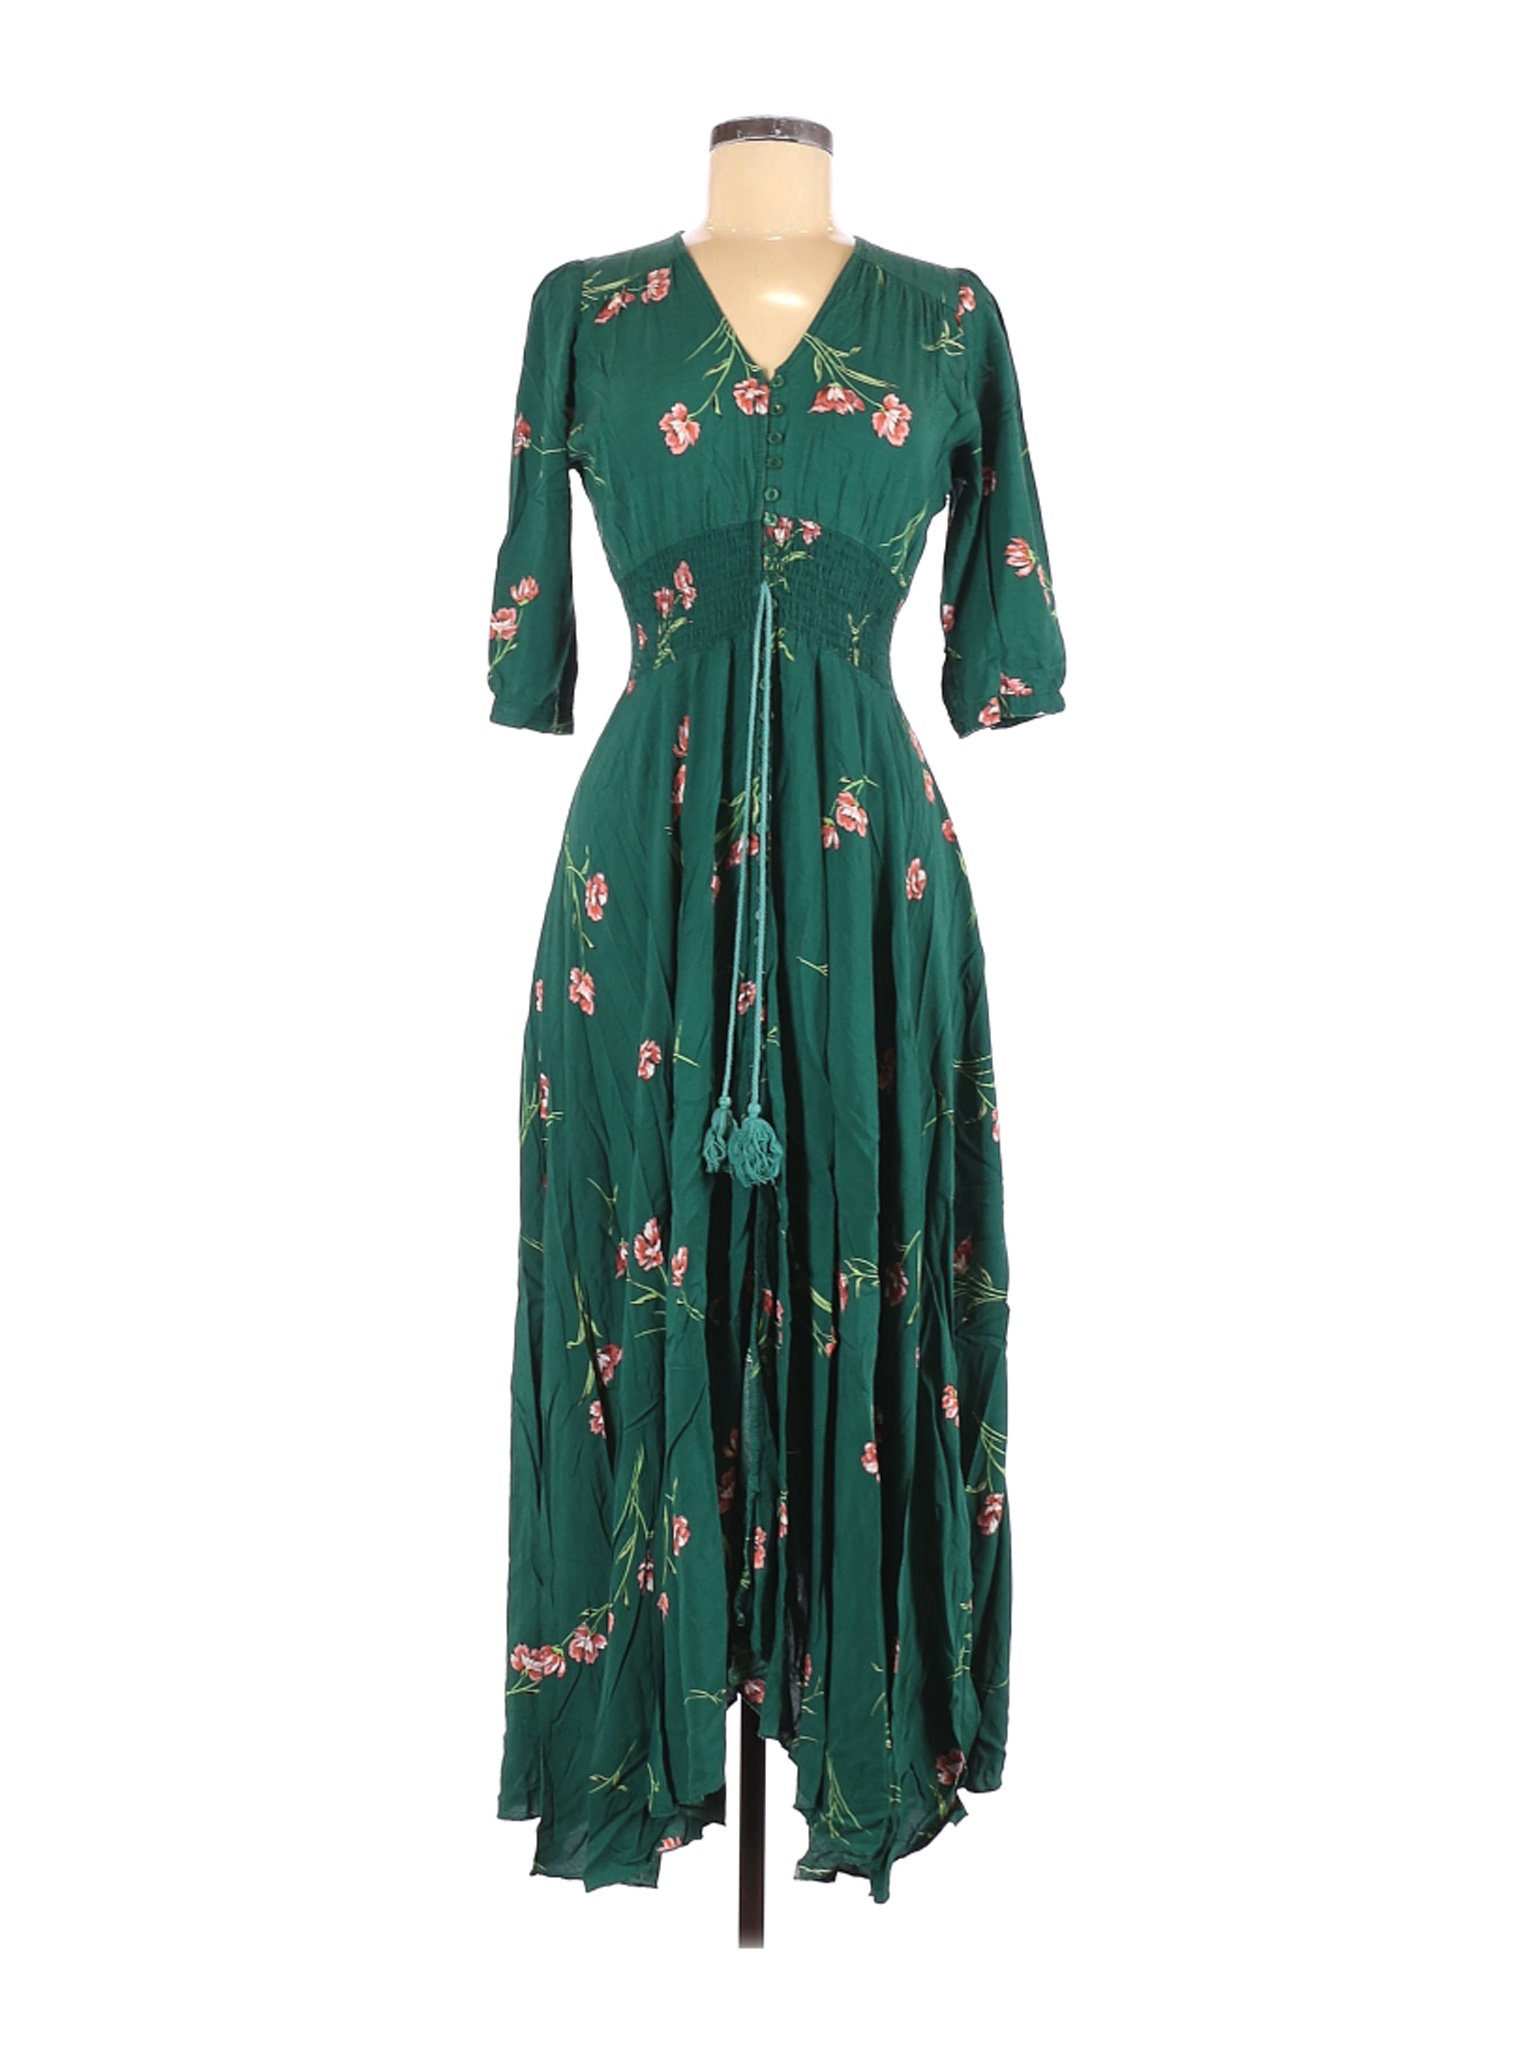 Jaase Women Green Casual Dress M | eBay